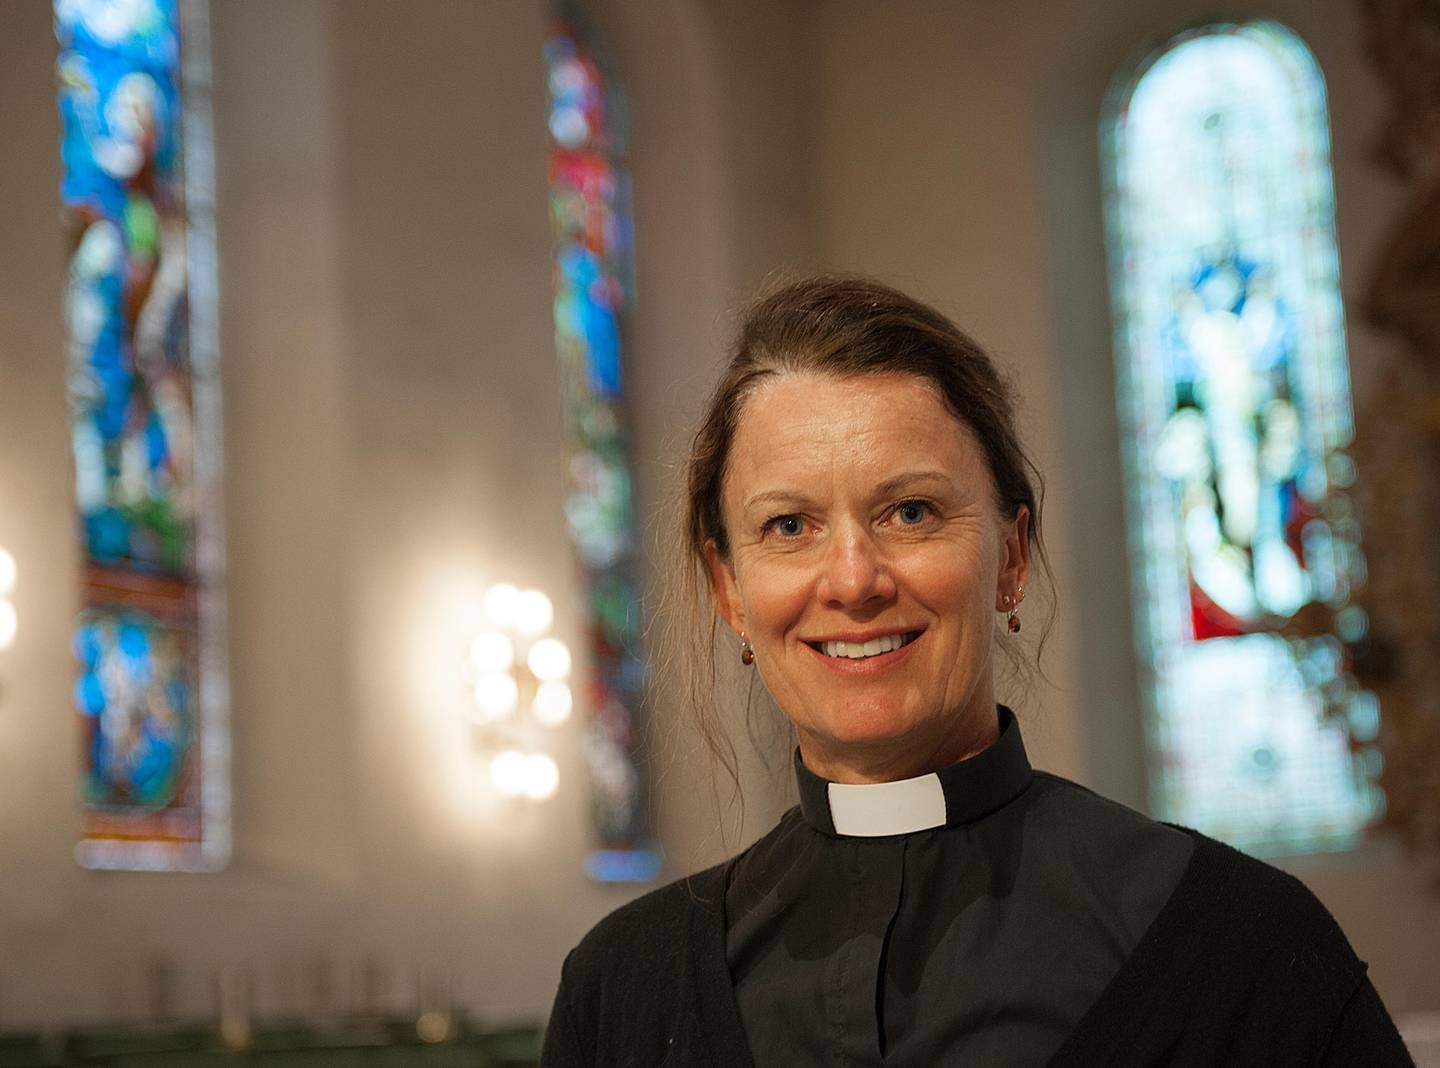 SYLSKARP SELVIRONI: Selv om Elisabeth Thorsen synes Teologibitches av og til går over streken, tror hun det er viktig å kunne le av religion.